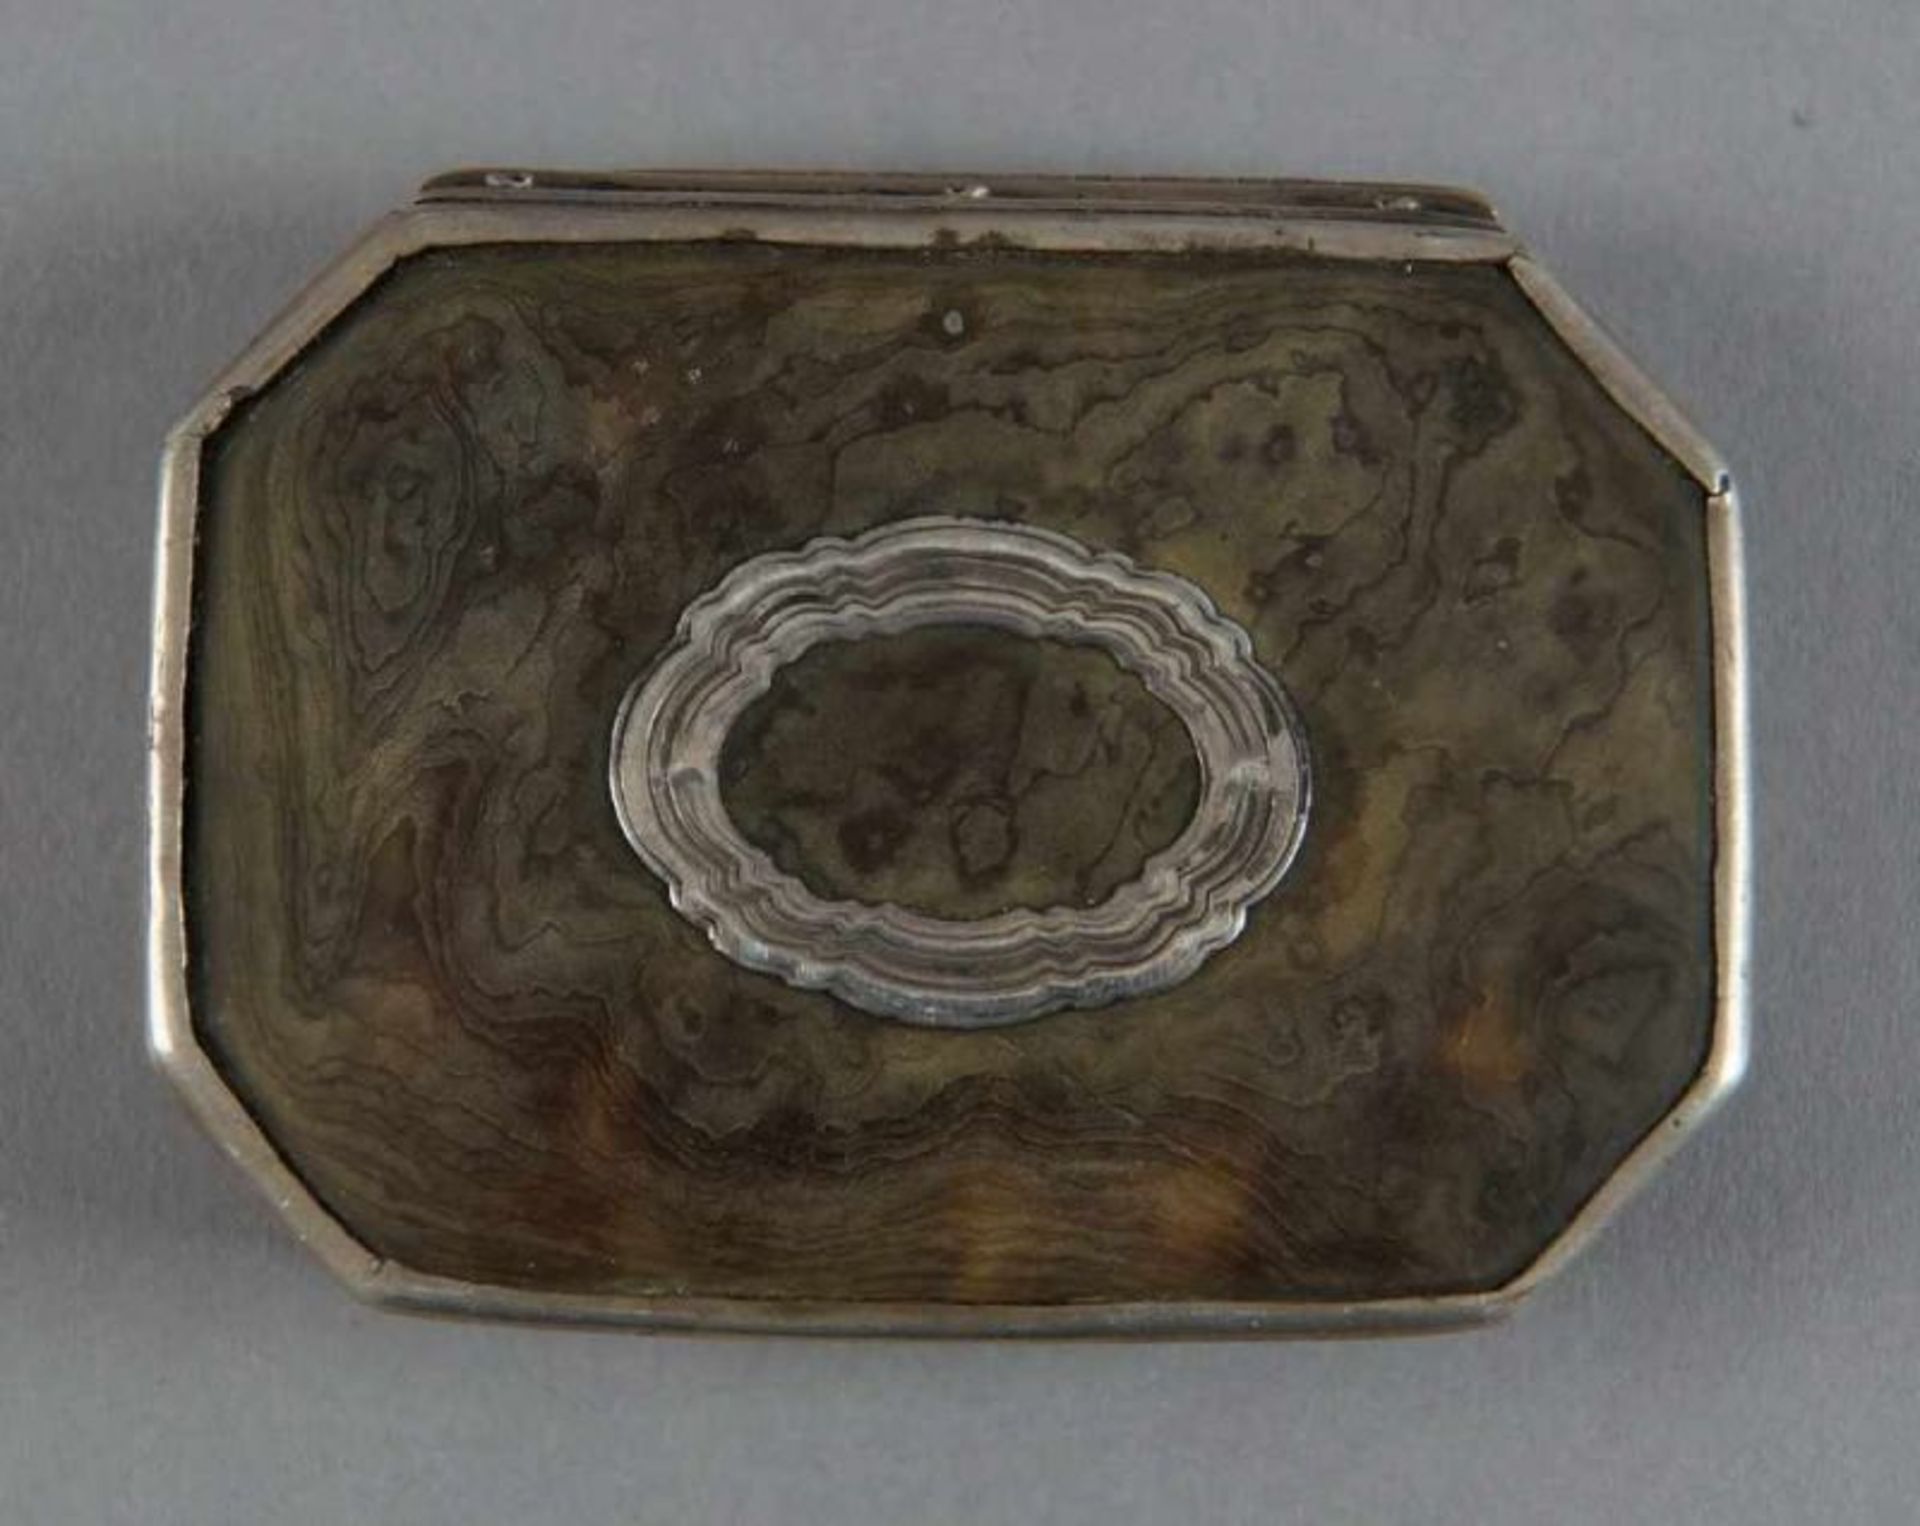 Barock Deckeldose, Schildpatt mit Silbermontierung, 18. JH, besch., 2x8,5x6 cm 20.17 % buyer's - Bild 3 aus 11